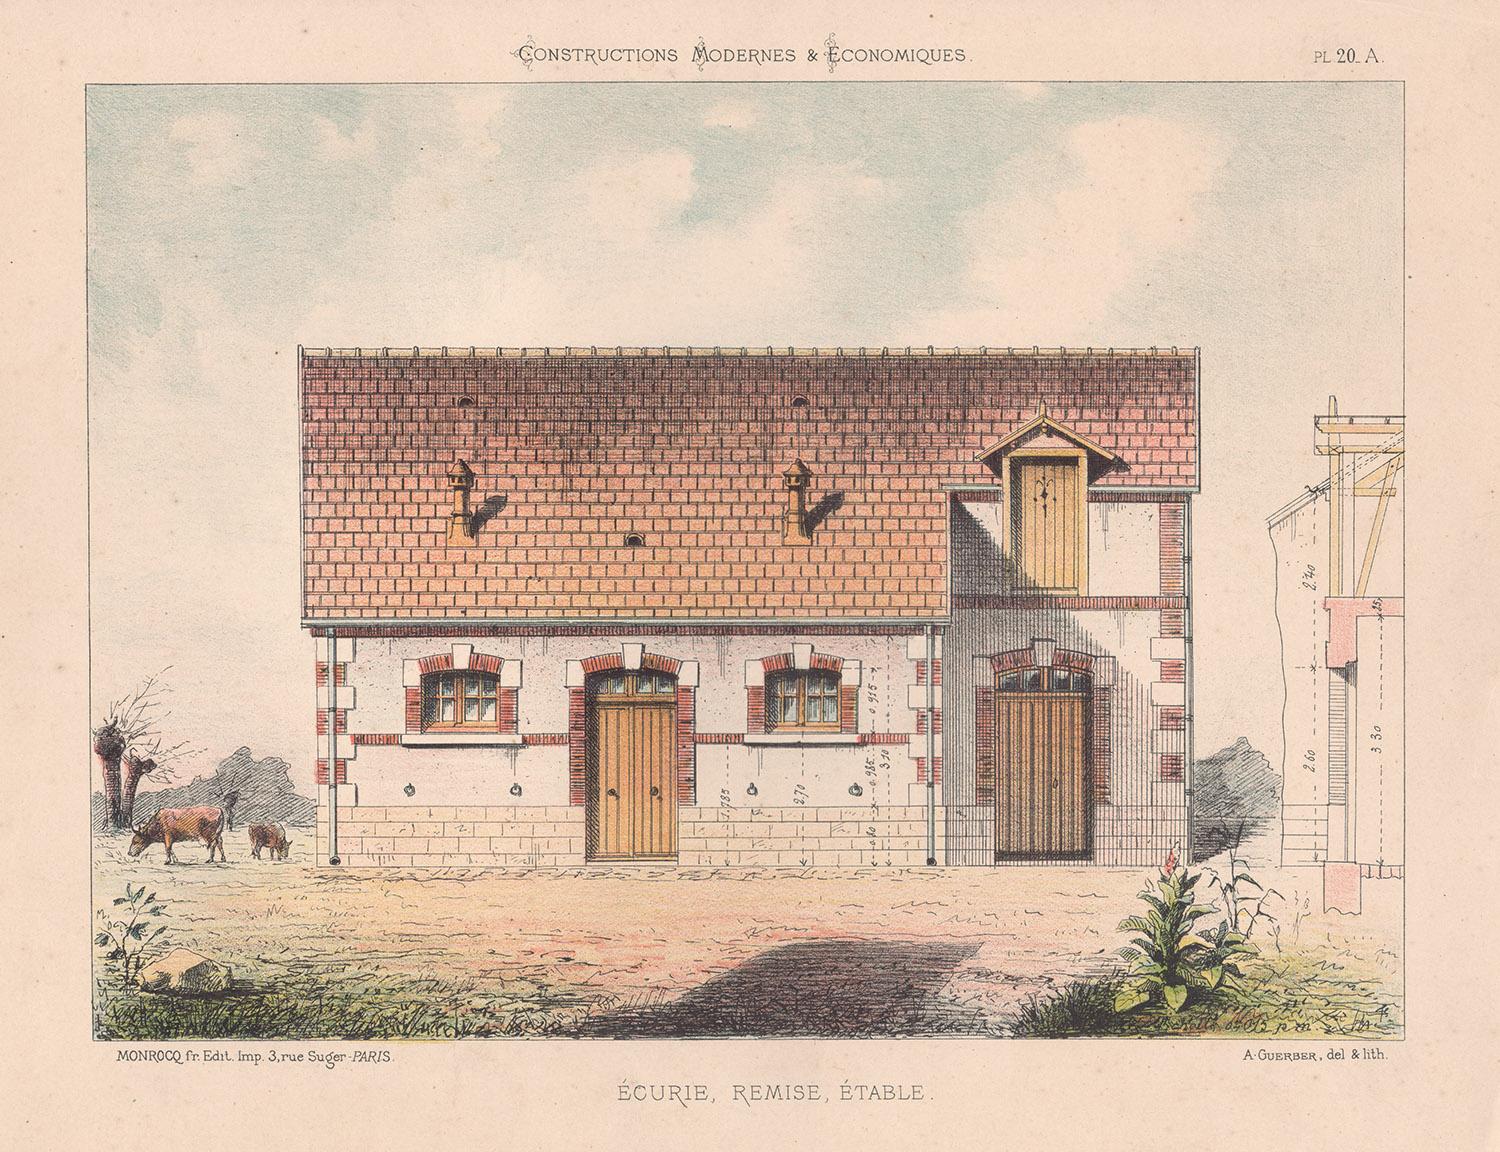 Lithographie d'architecture française, design de maison, fin du 19e siècle, c1870